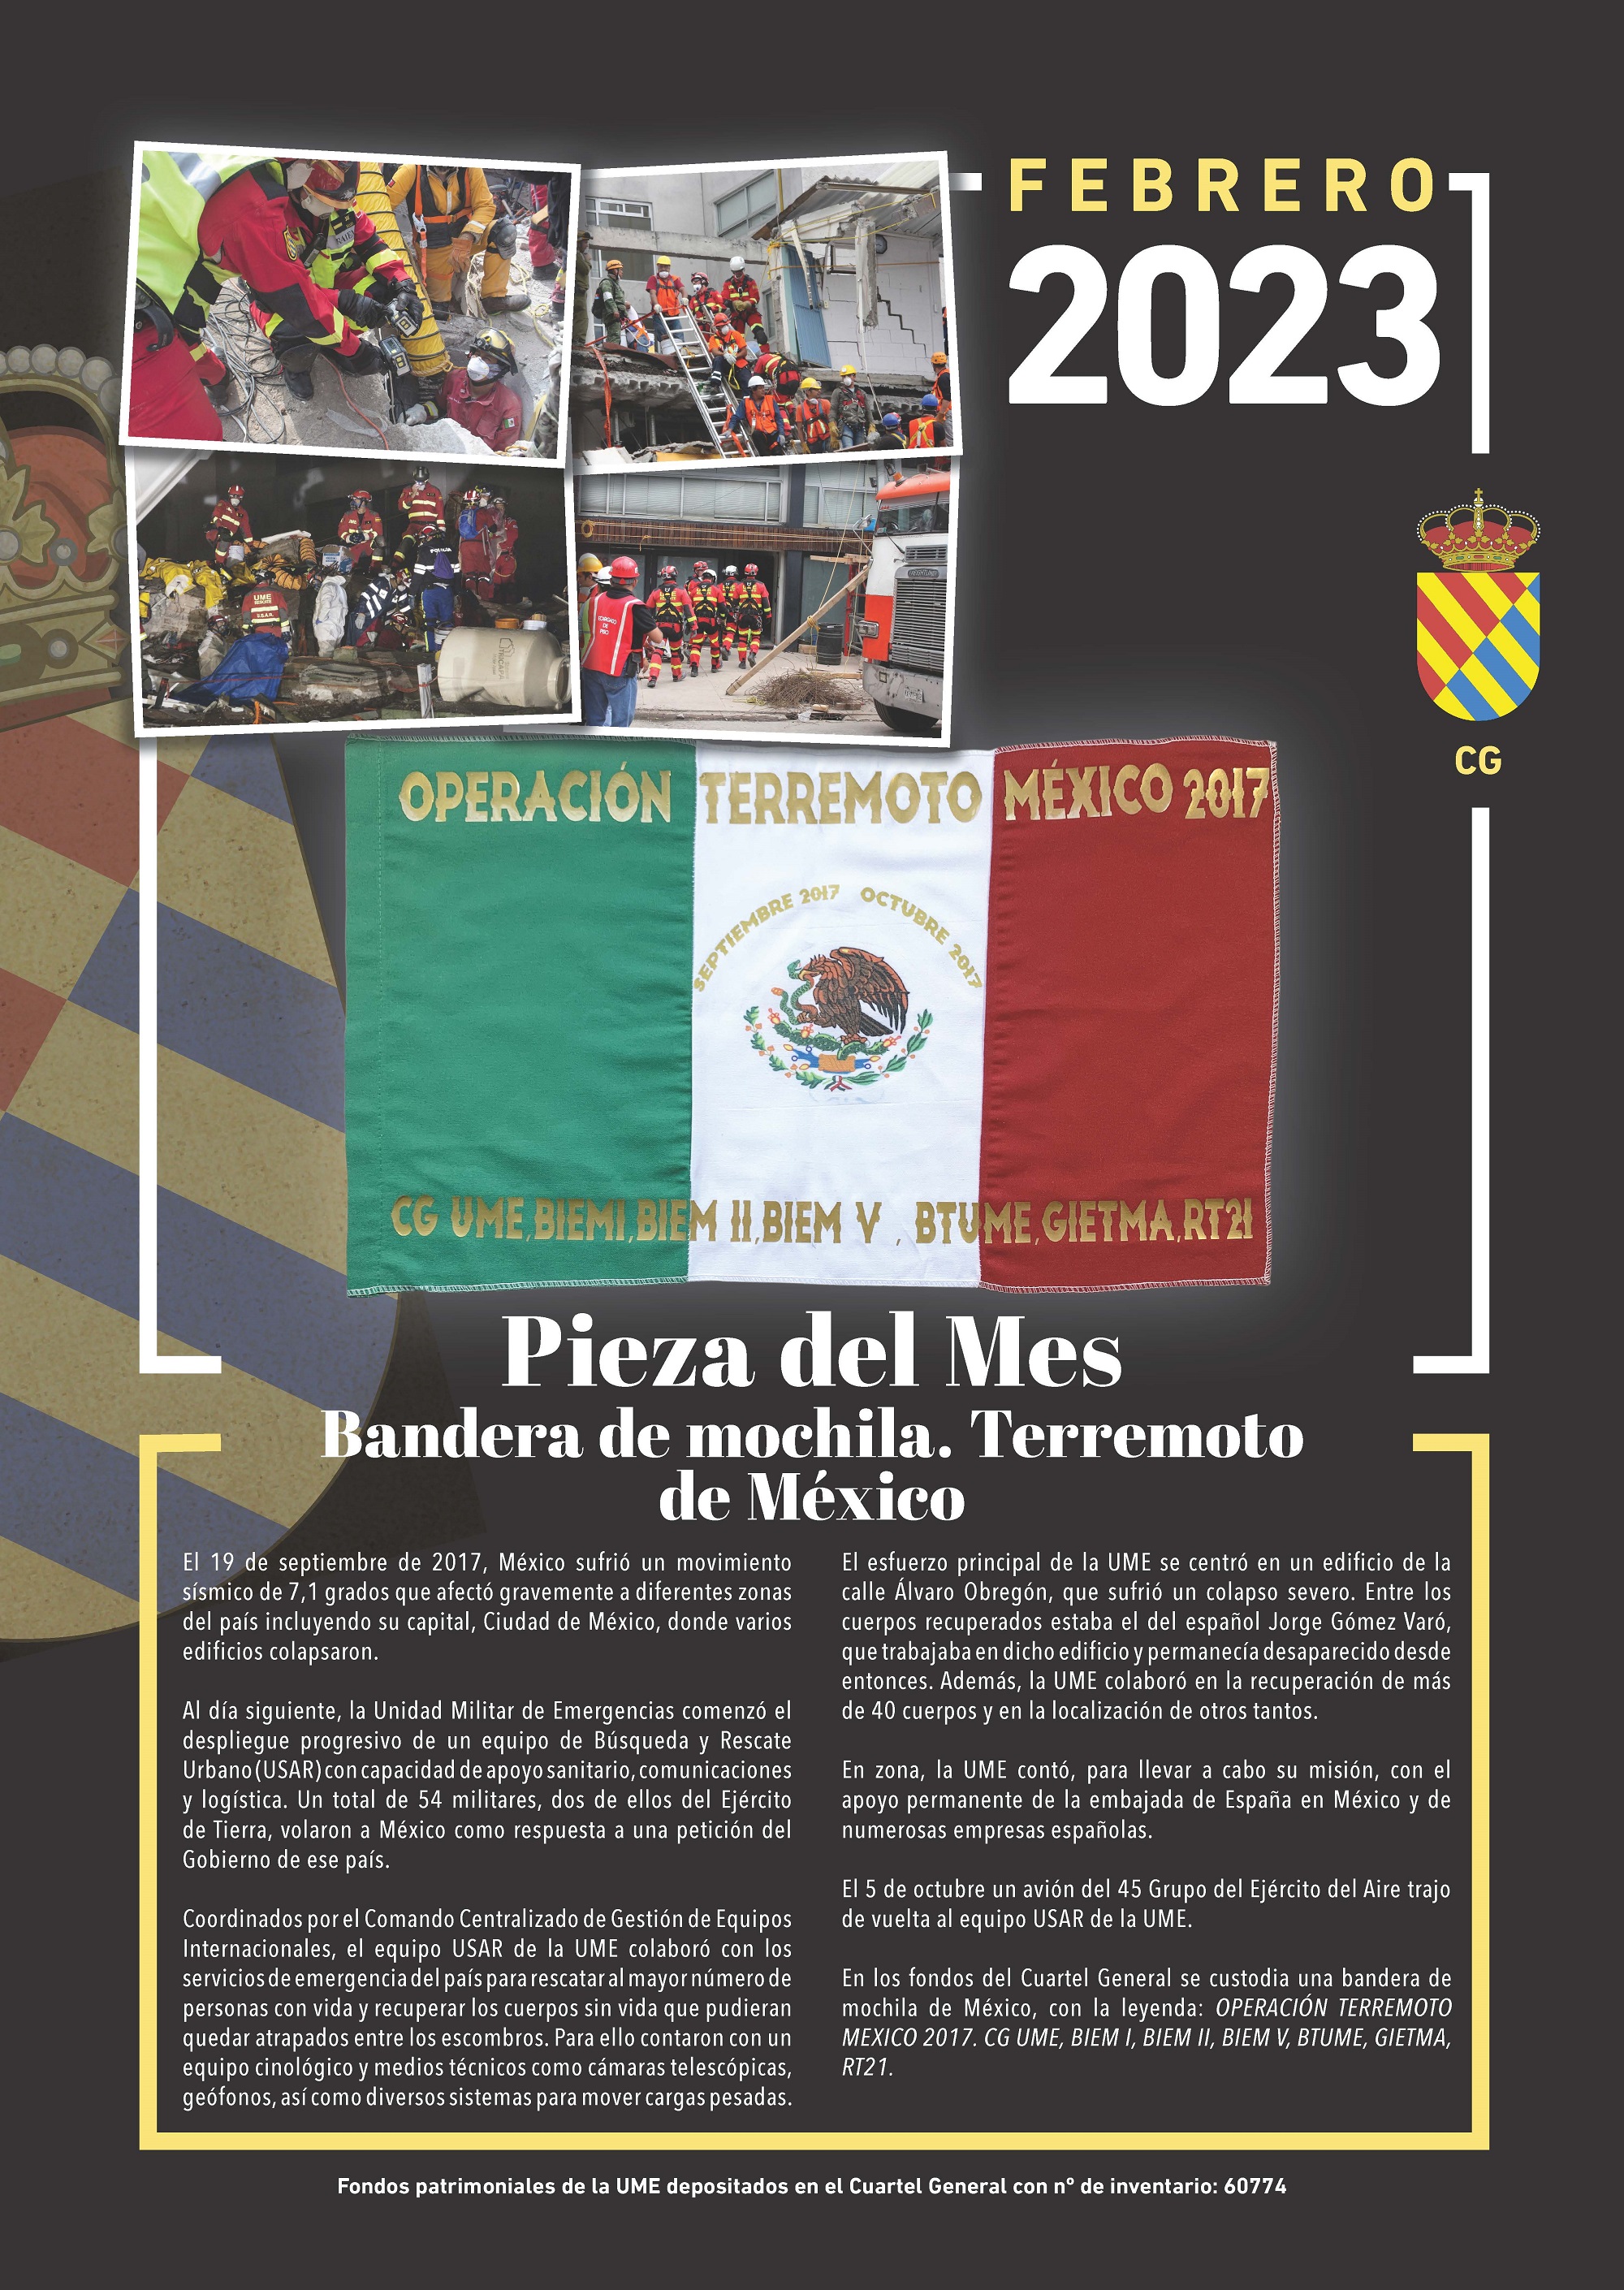 Pieza_ del_Mes_FEBRERO_2023